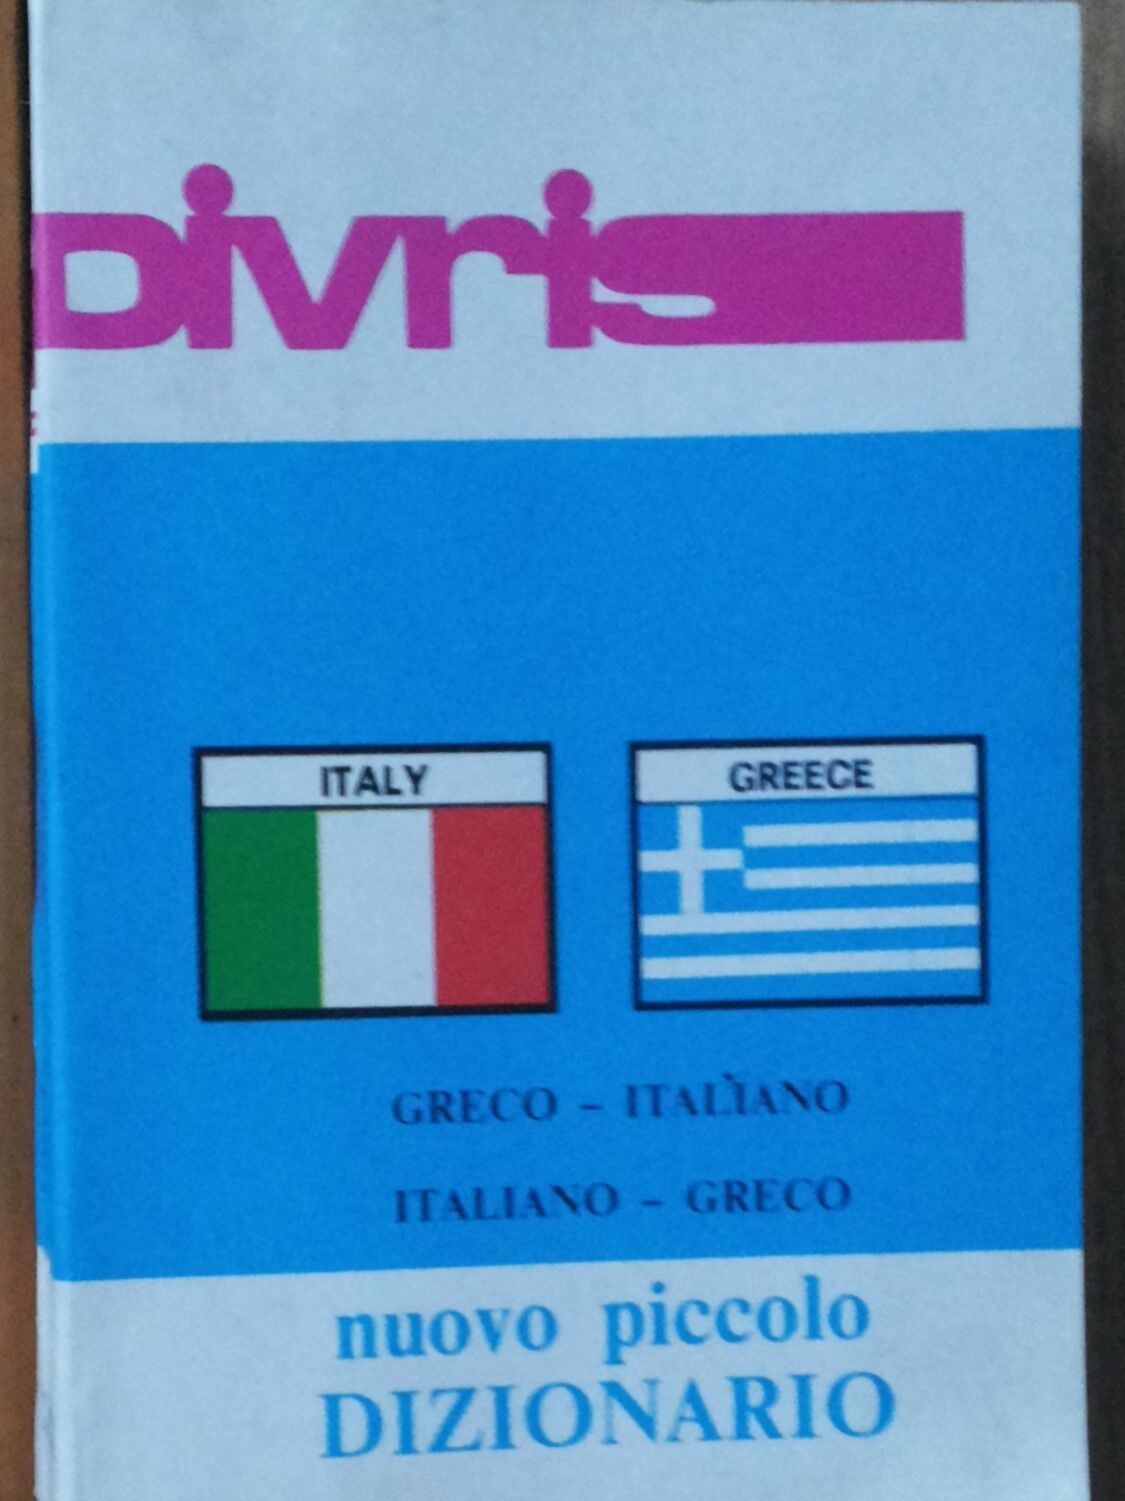 Nuovo Piccolo Dizionario - AA.VV. - Divrys,1986 - R